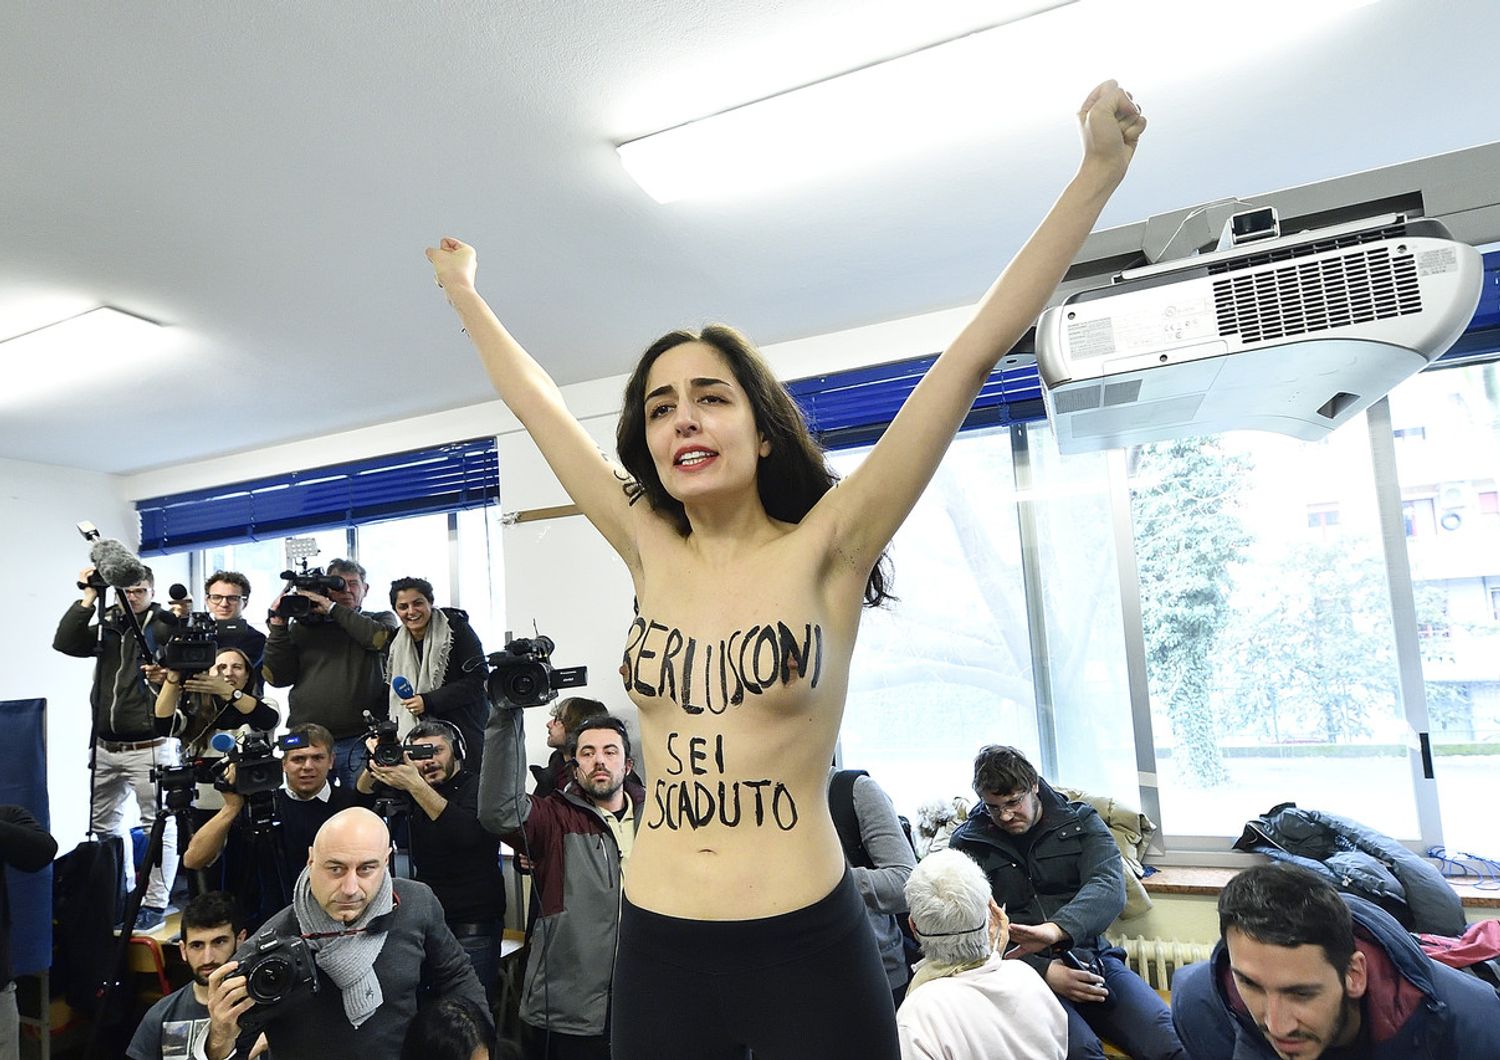 &nbsp;Una Femen protesta nel seggio di Silvio Berlusconi durante le elezioni del 4 marzo 2018